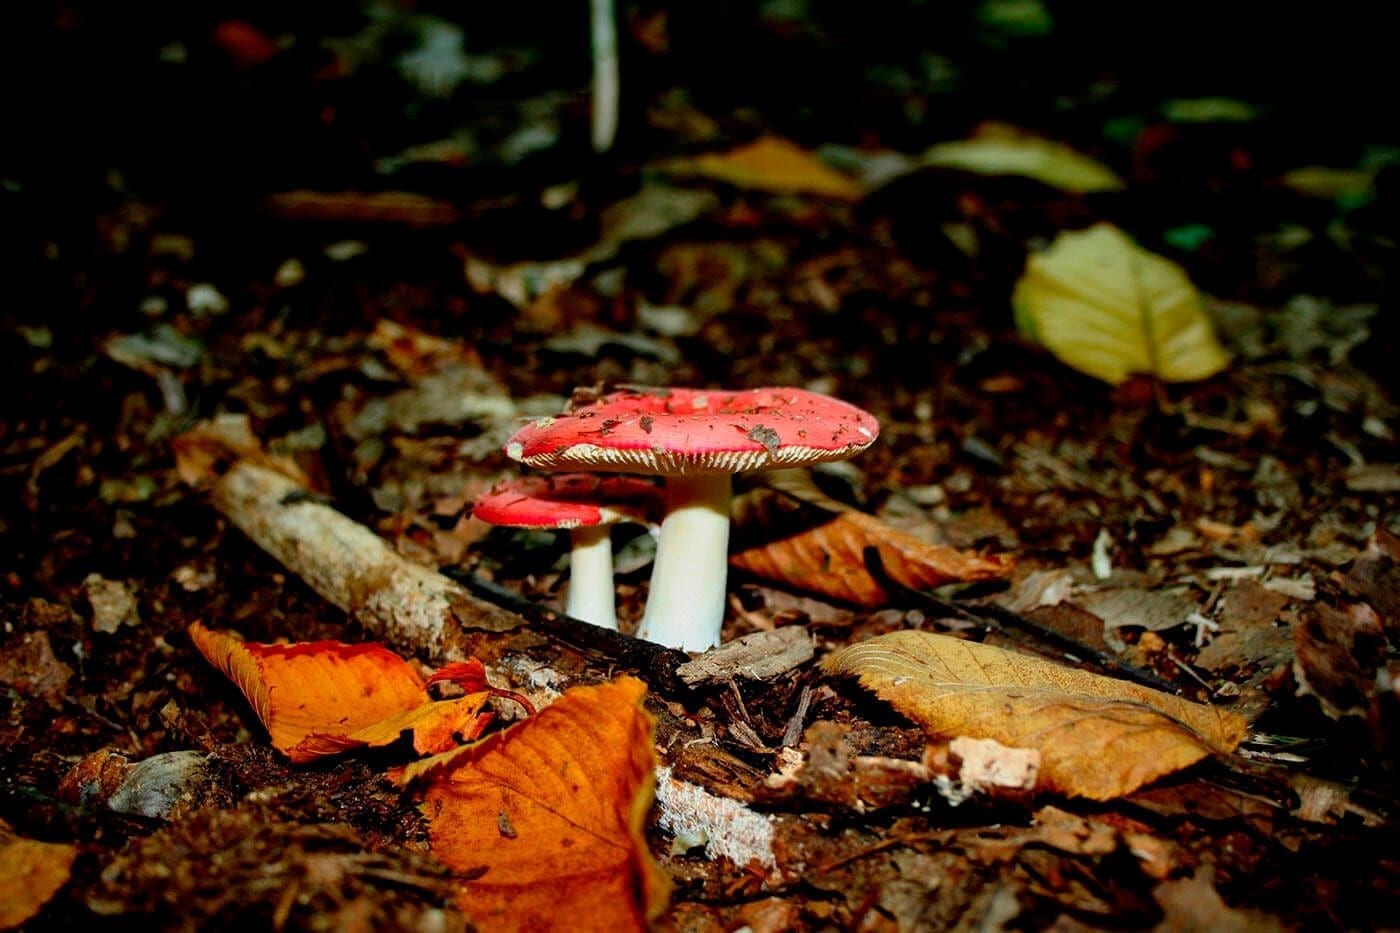 NJ Travel-Hiking-Mushrooms on Trail